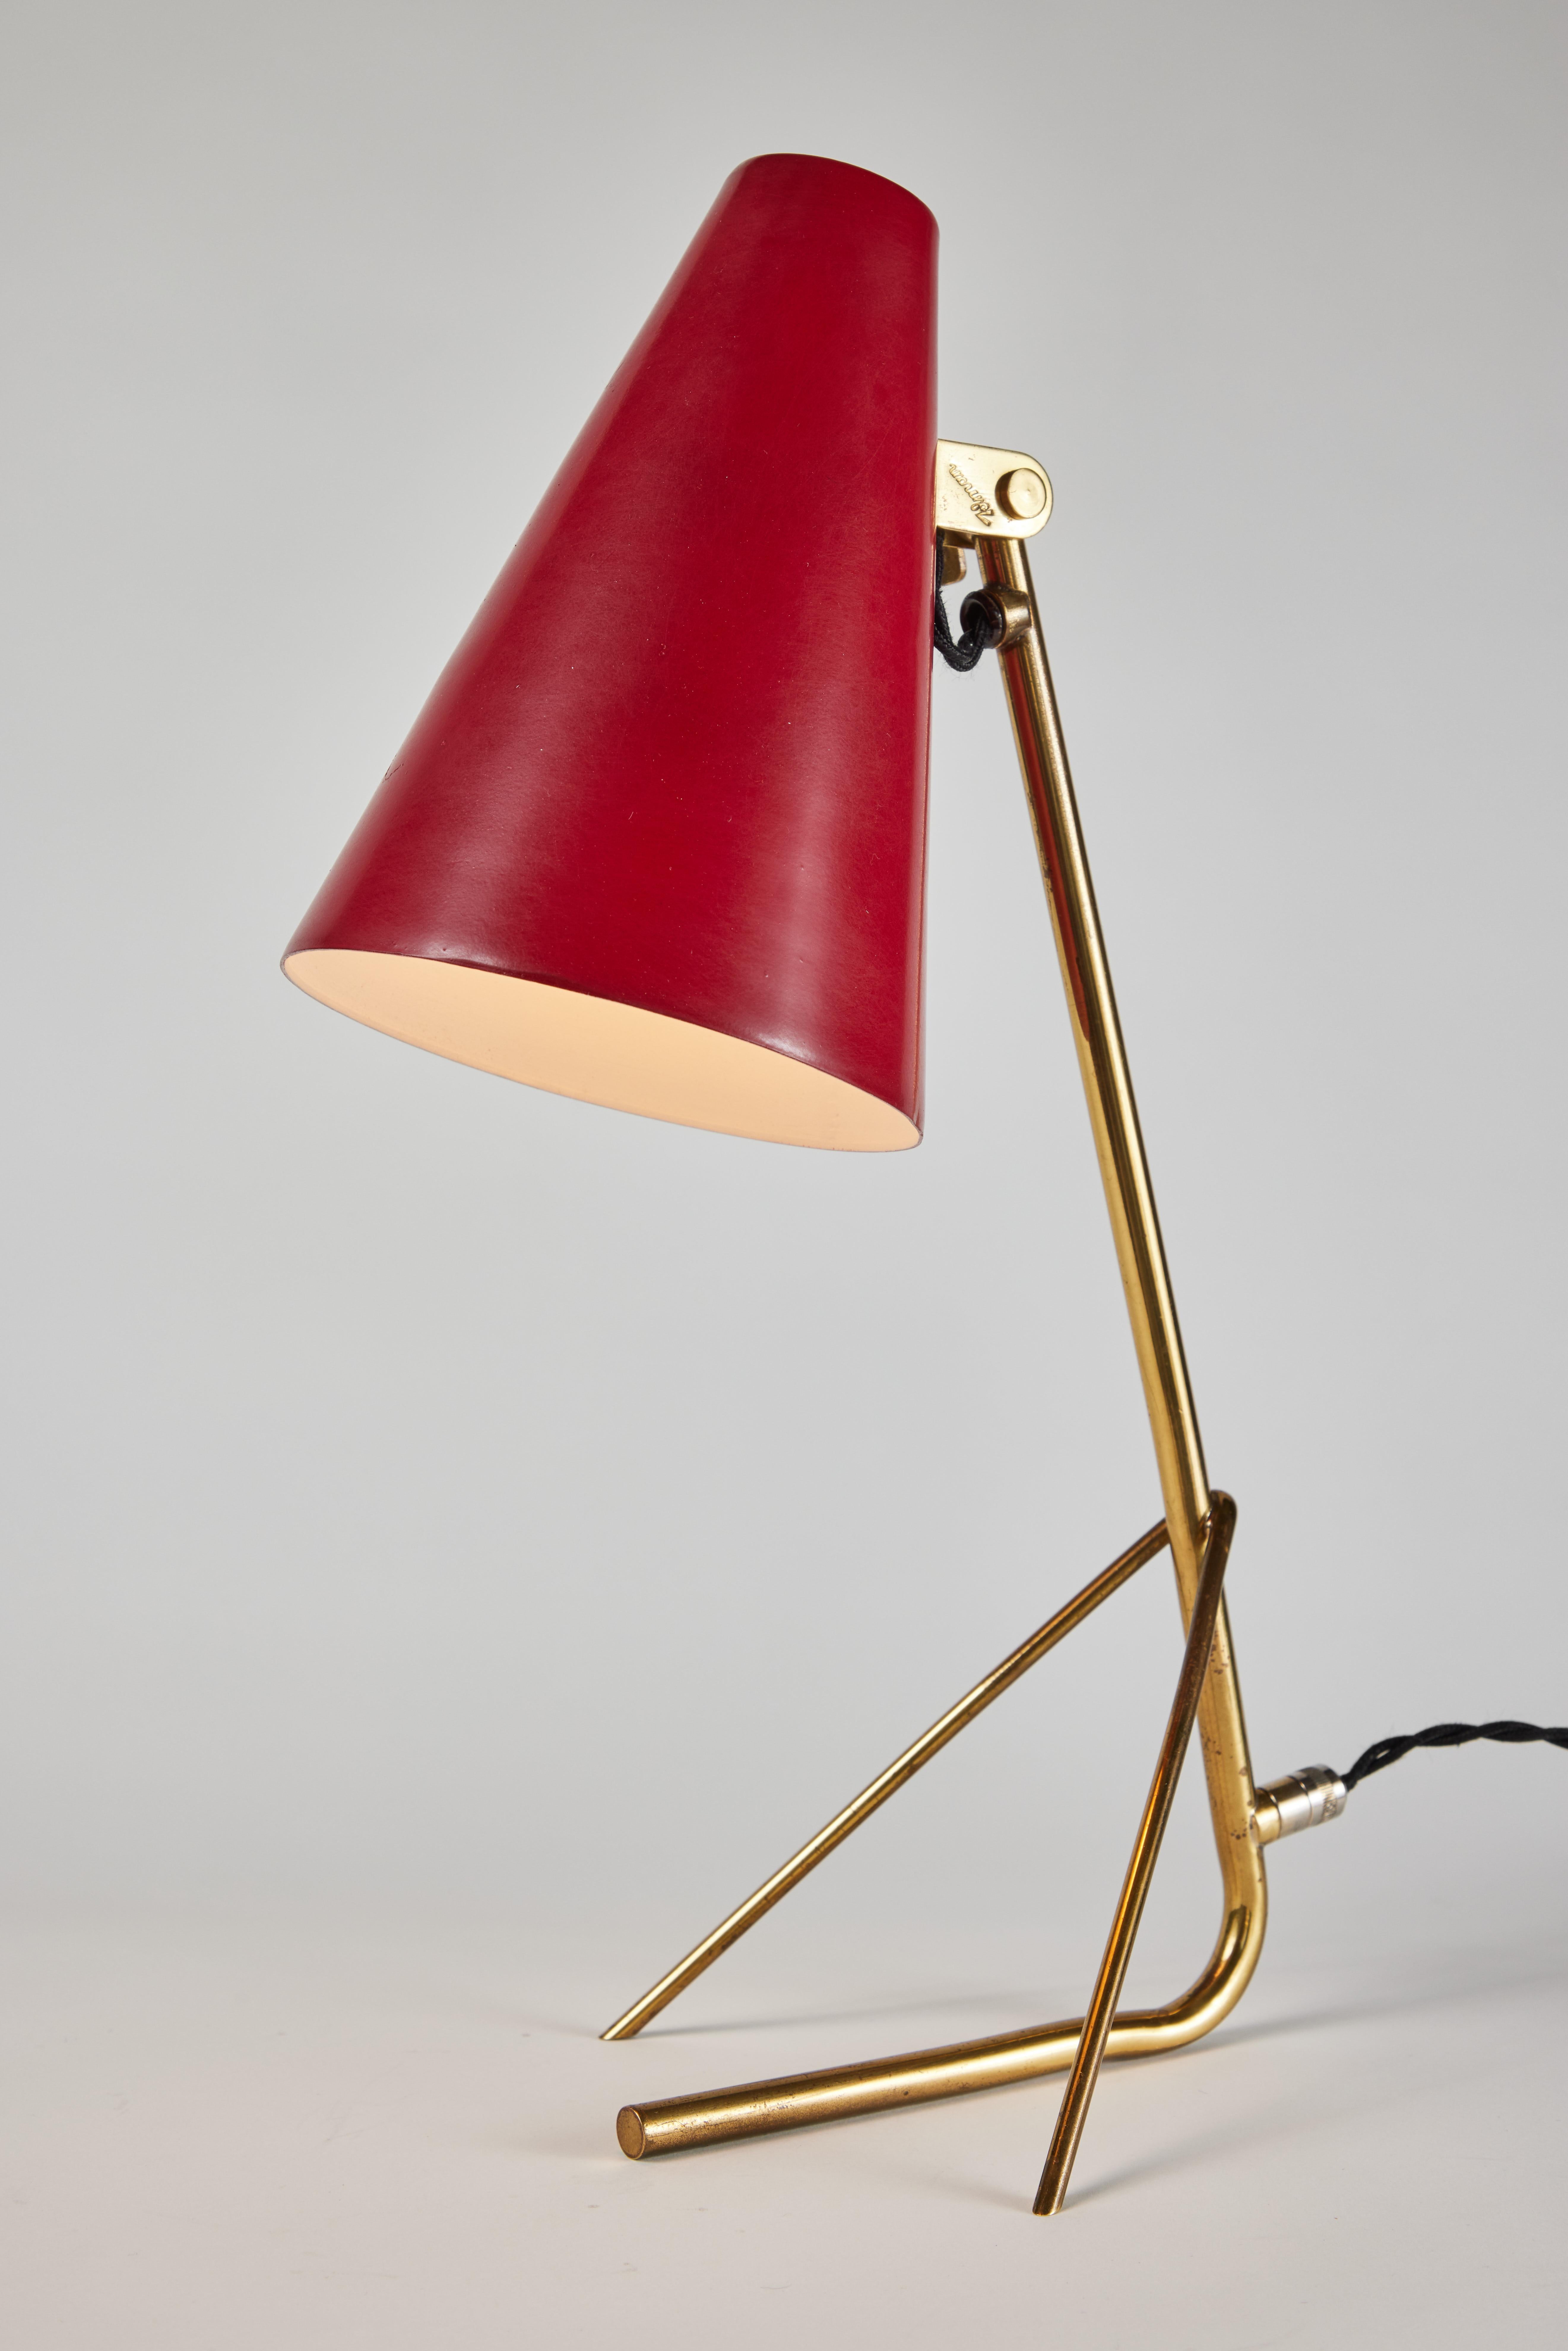 Lampe de table Mauri Almari modèle K11-17 des années 1950 pour Idman. Un modèle rare exécuté en métal émaillé rouge et en laiton. Les stores peuvent être relevés et abaissés. Rappelant les designs emblématiques de Paavo Tynell pour Taito Oy. Une